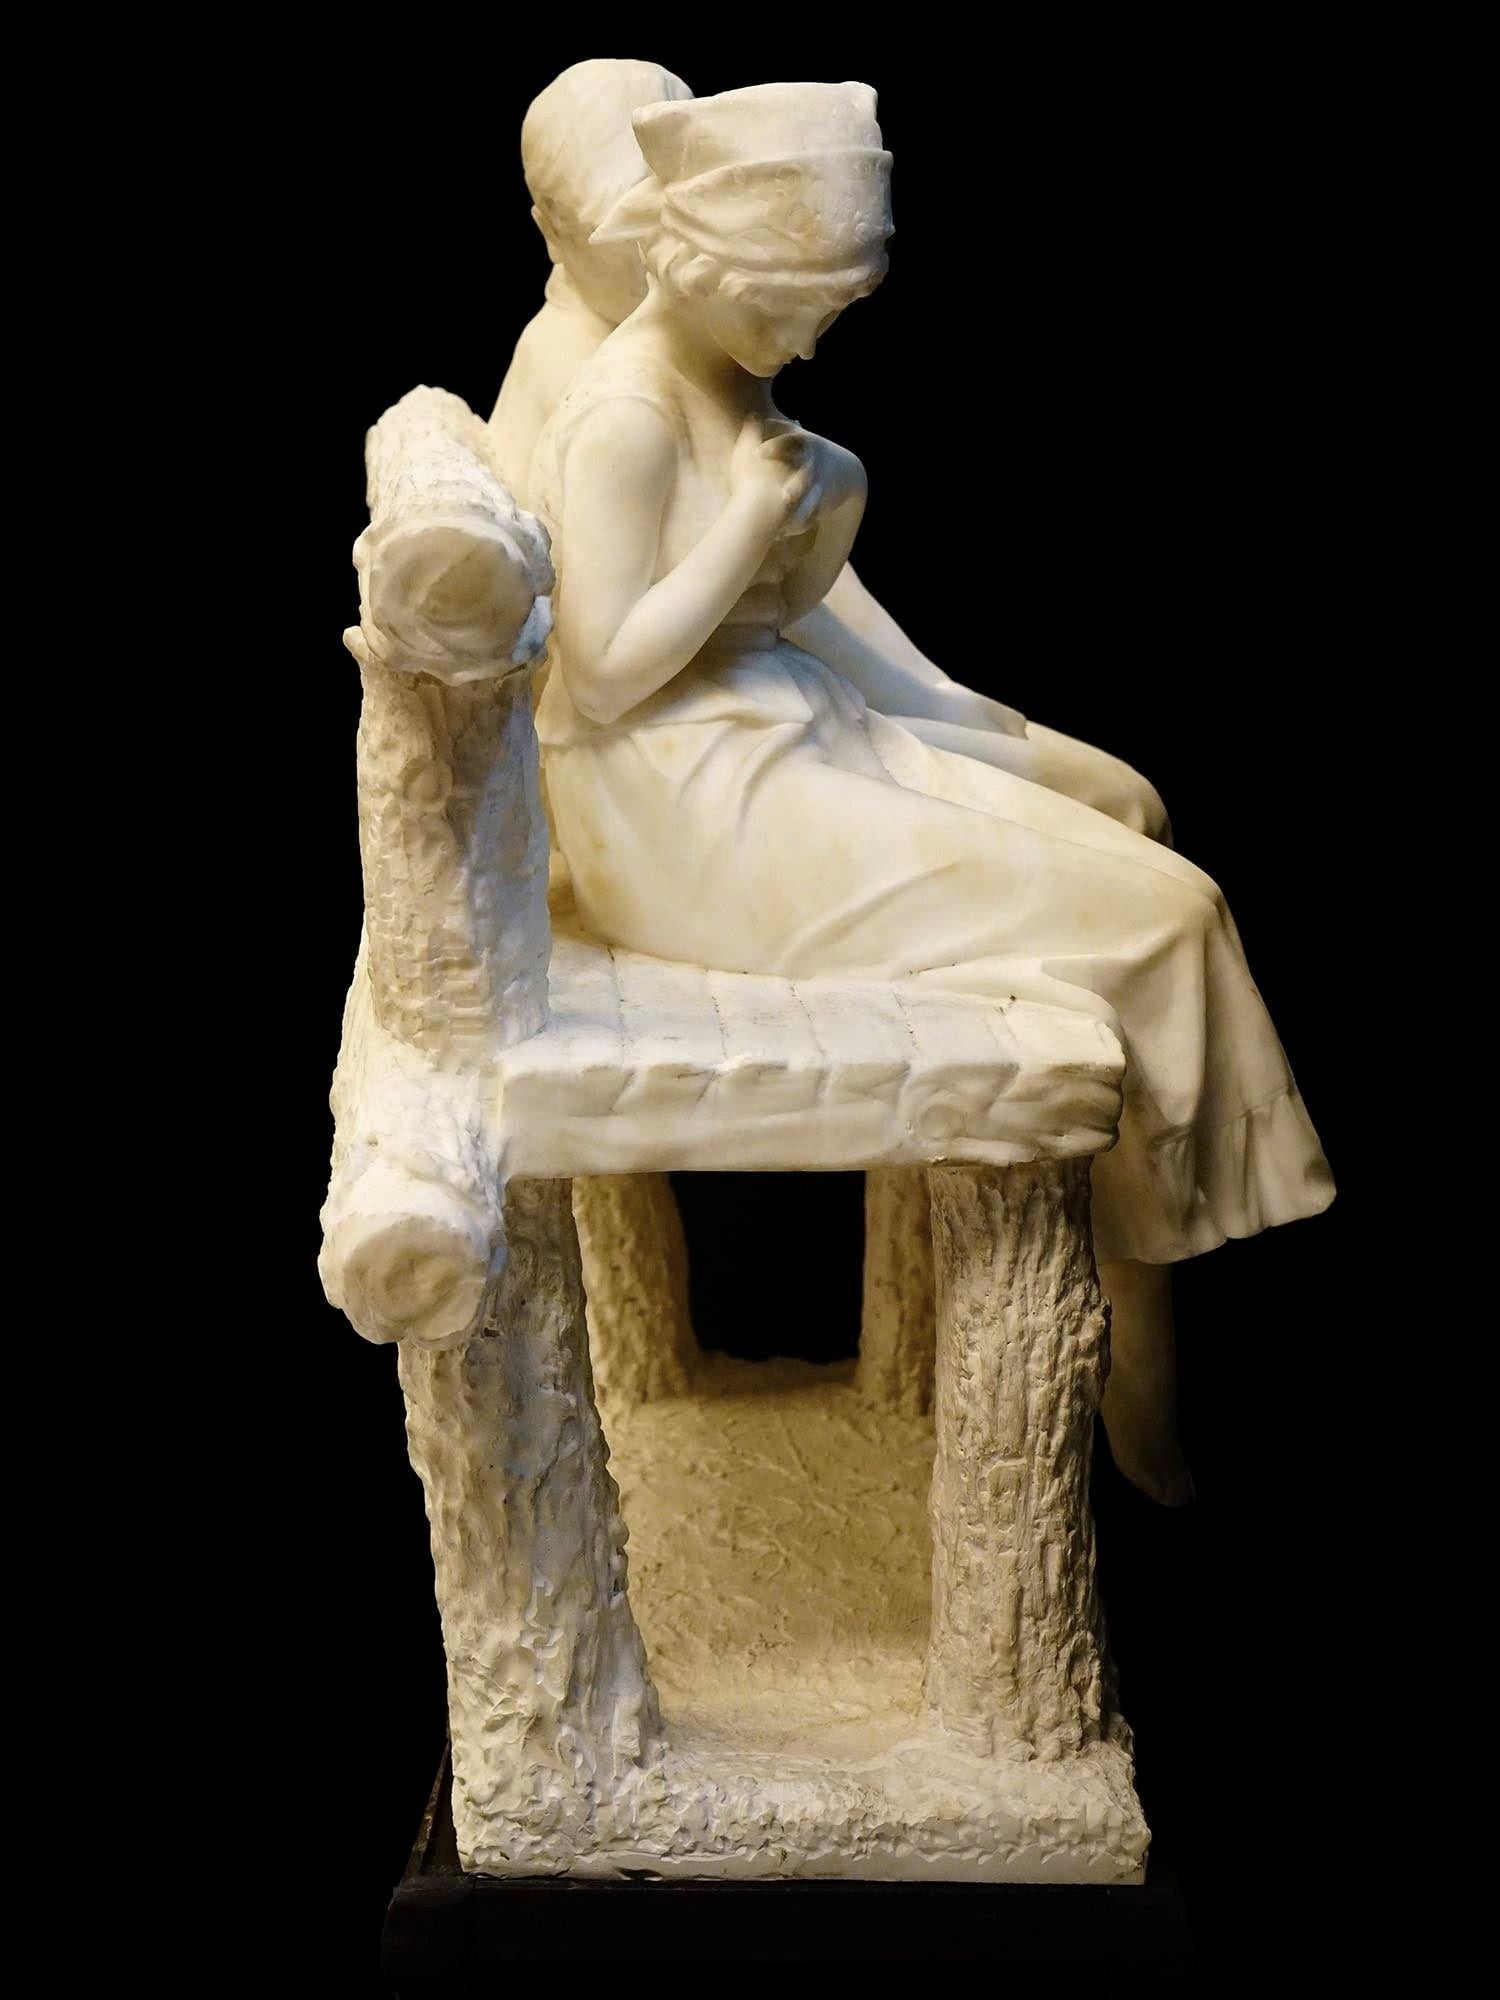 Feine Alabasterskulptur eines jungen Paares auf einer Bank sitzend, die dem italienischen Meister Umberto Stiaccini zugeschrieben wird, der im späten 19. bis frühen 20.
Offensichtlich unsigniert.  26 x 22 x 14 1/2 Zoll.